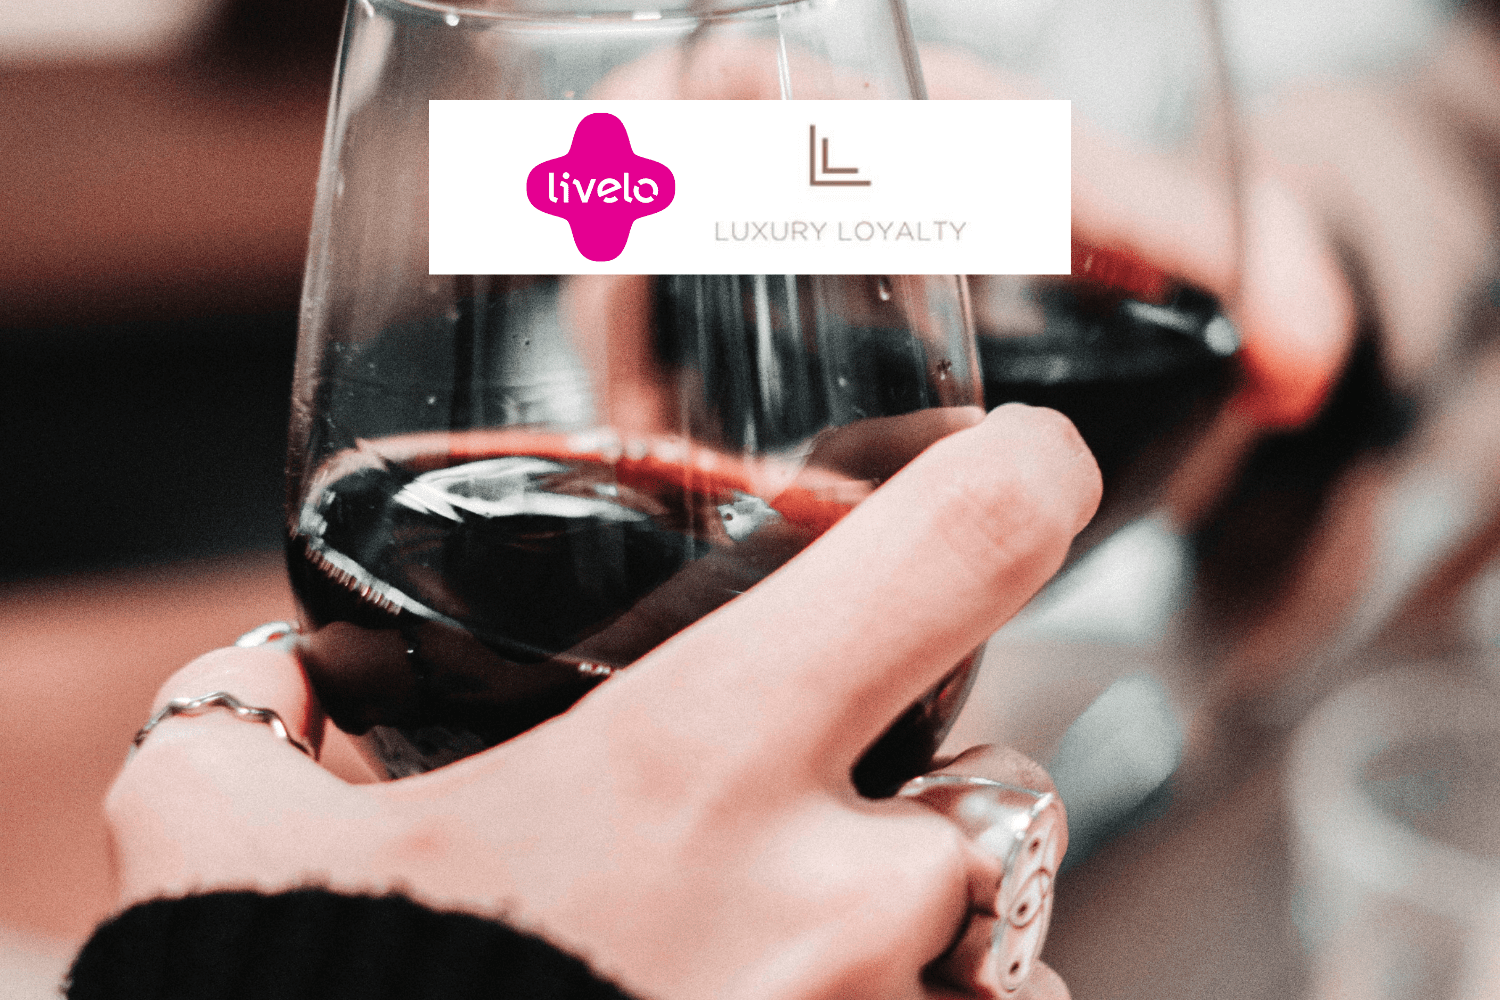 pessoas brindando taças de vinhos com logo Livelo e Luxury Loyalty 12 pontos Livelo